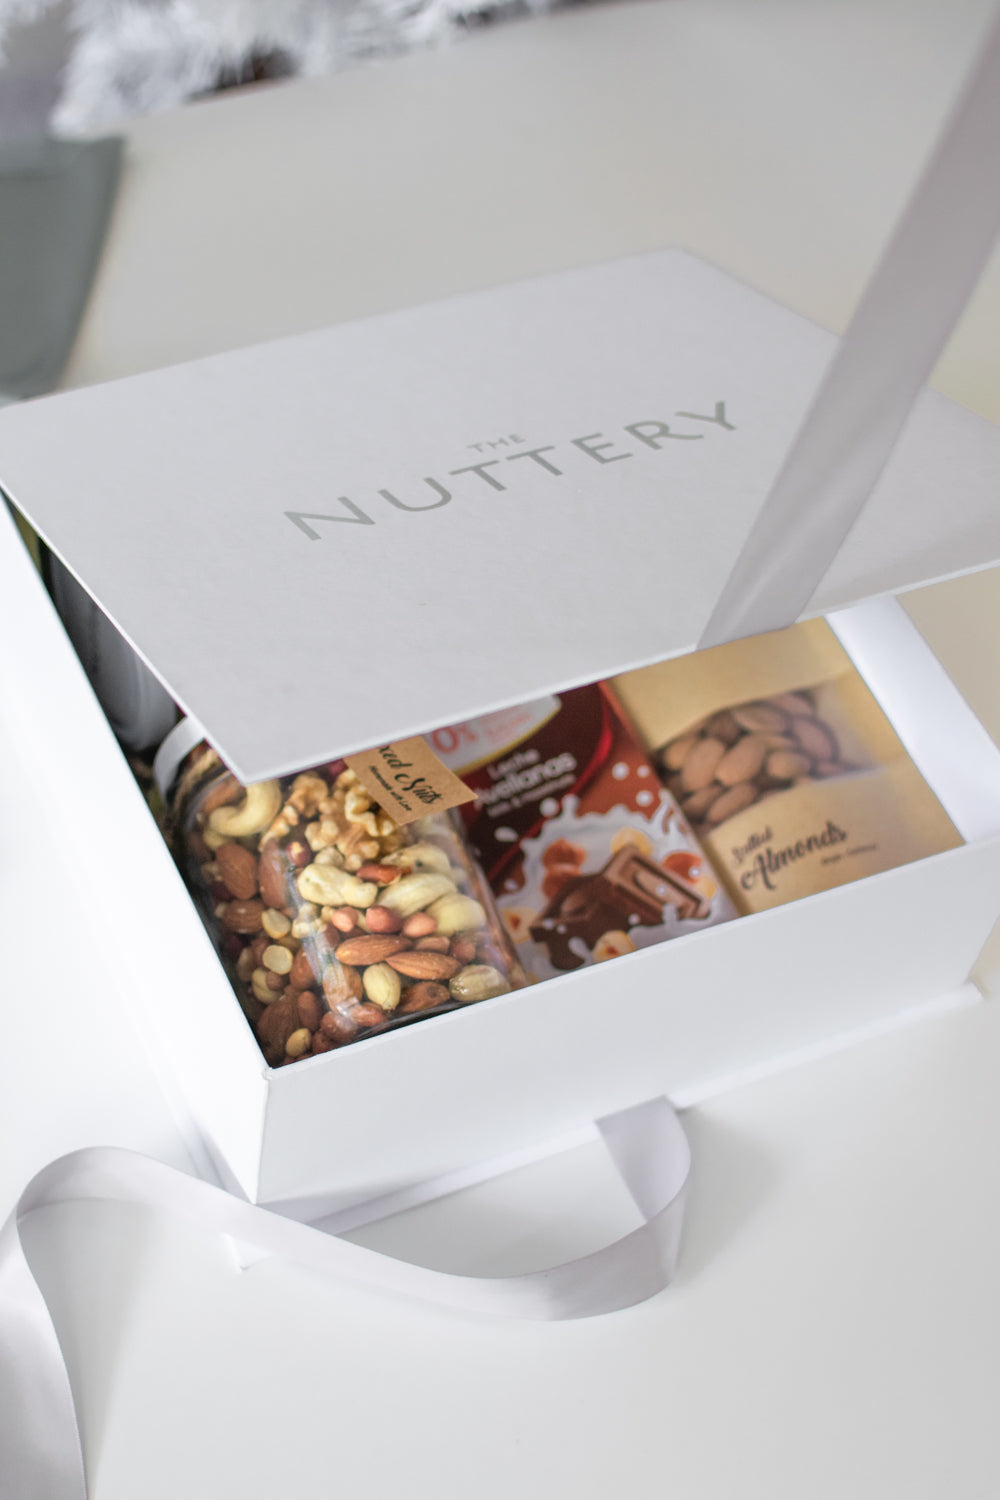 Tiramisu Truffles & Nuts Luxury Gift box